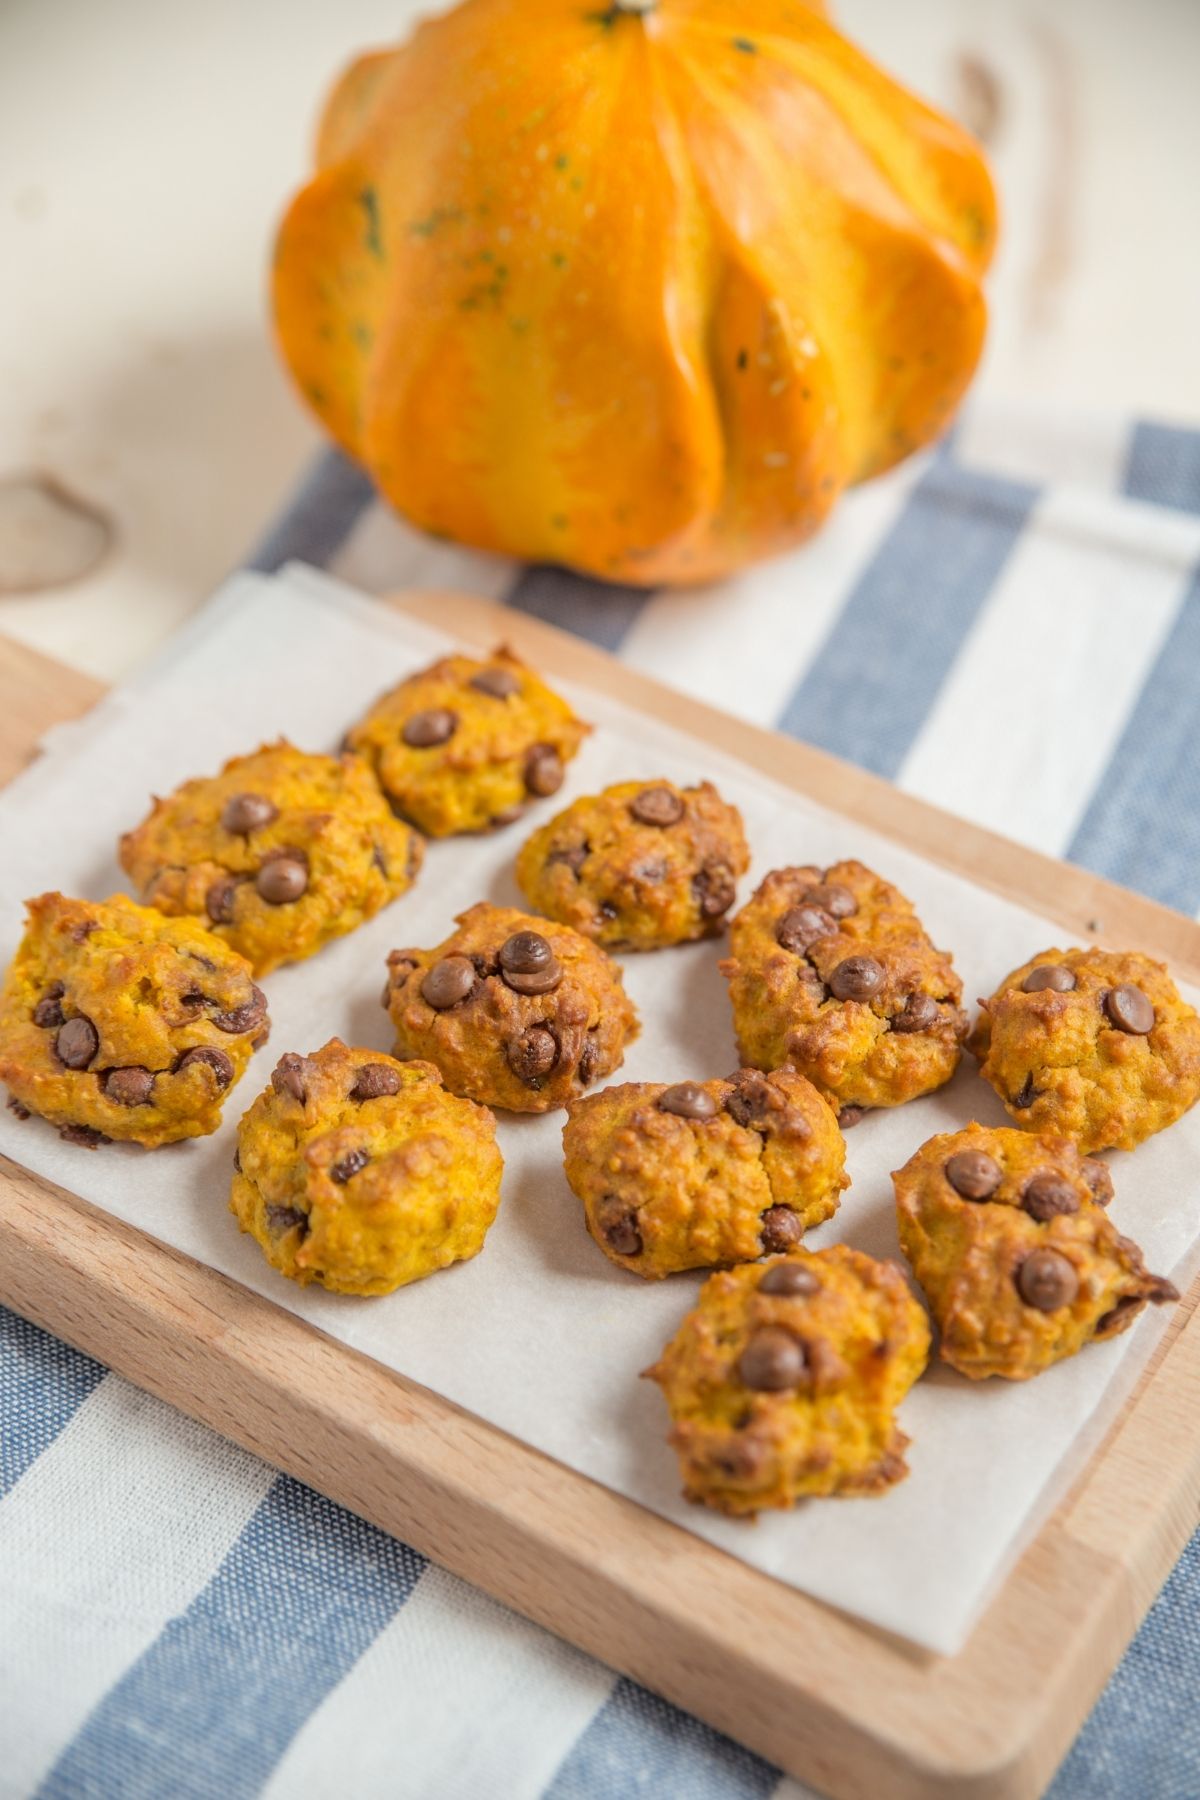 Pumpkin Recipes You'll Love: Easy + Quick